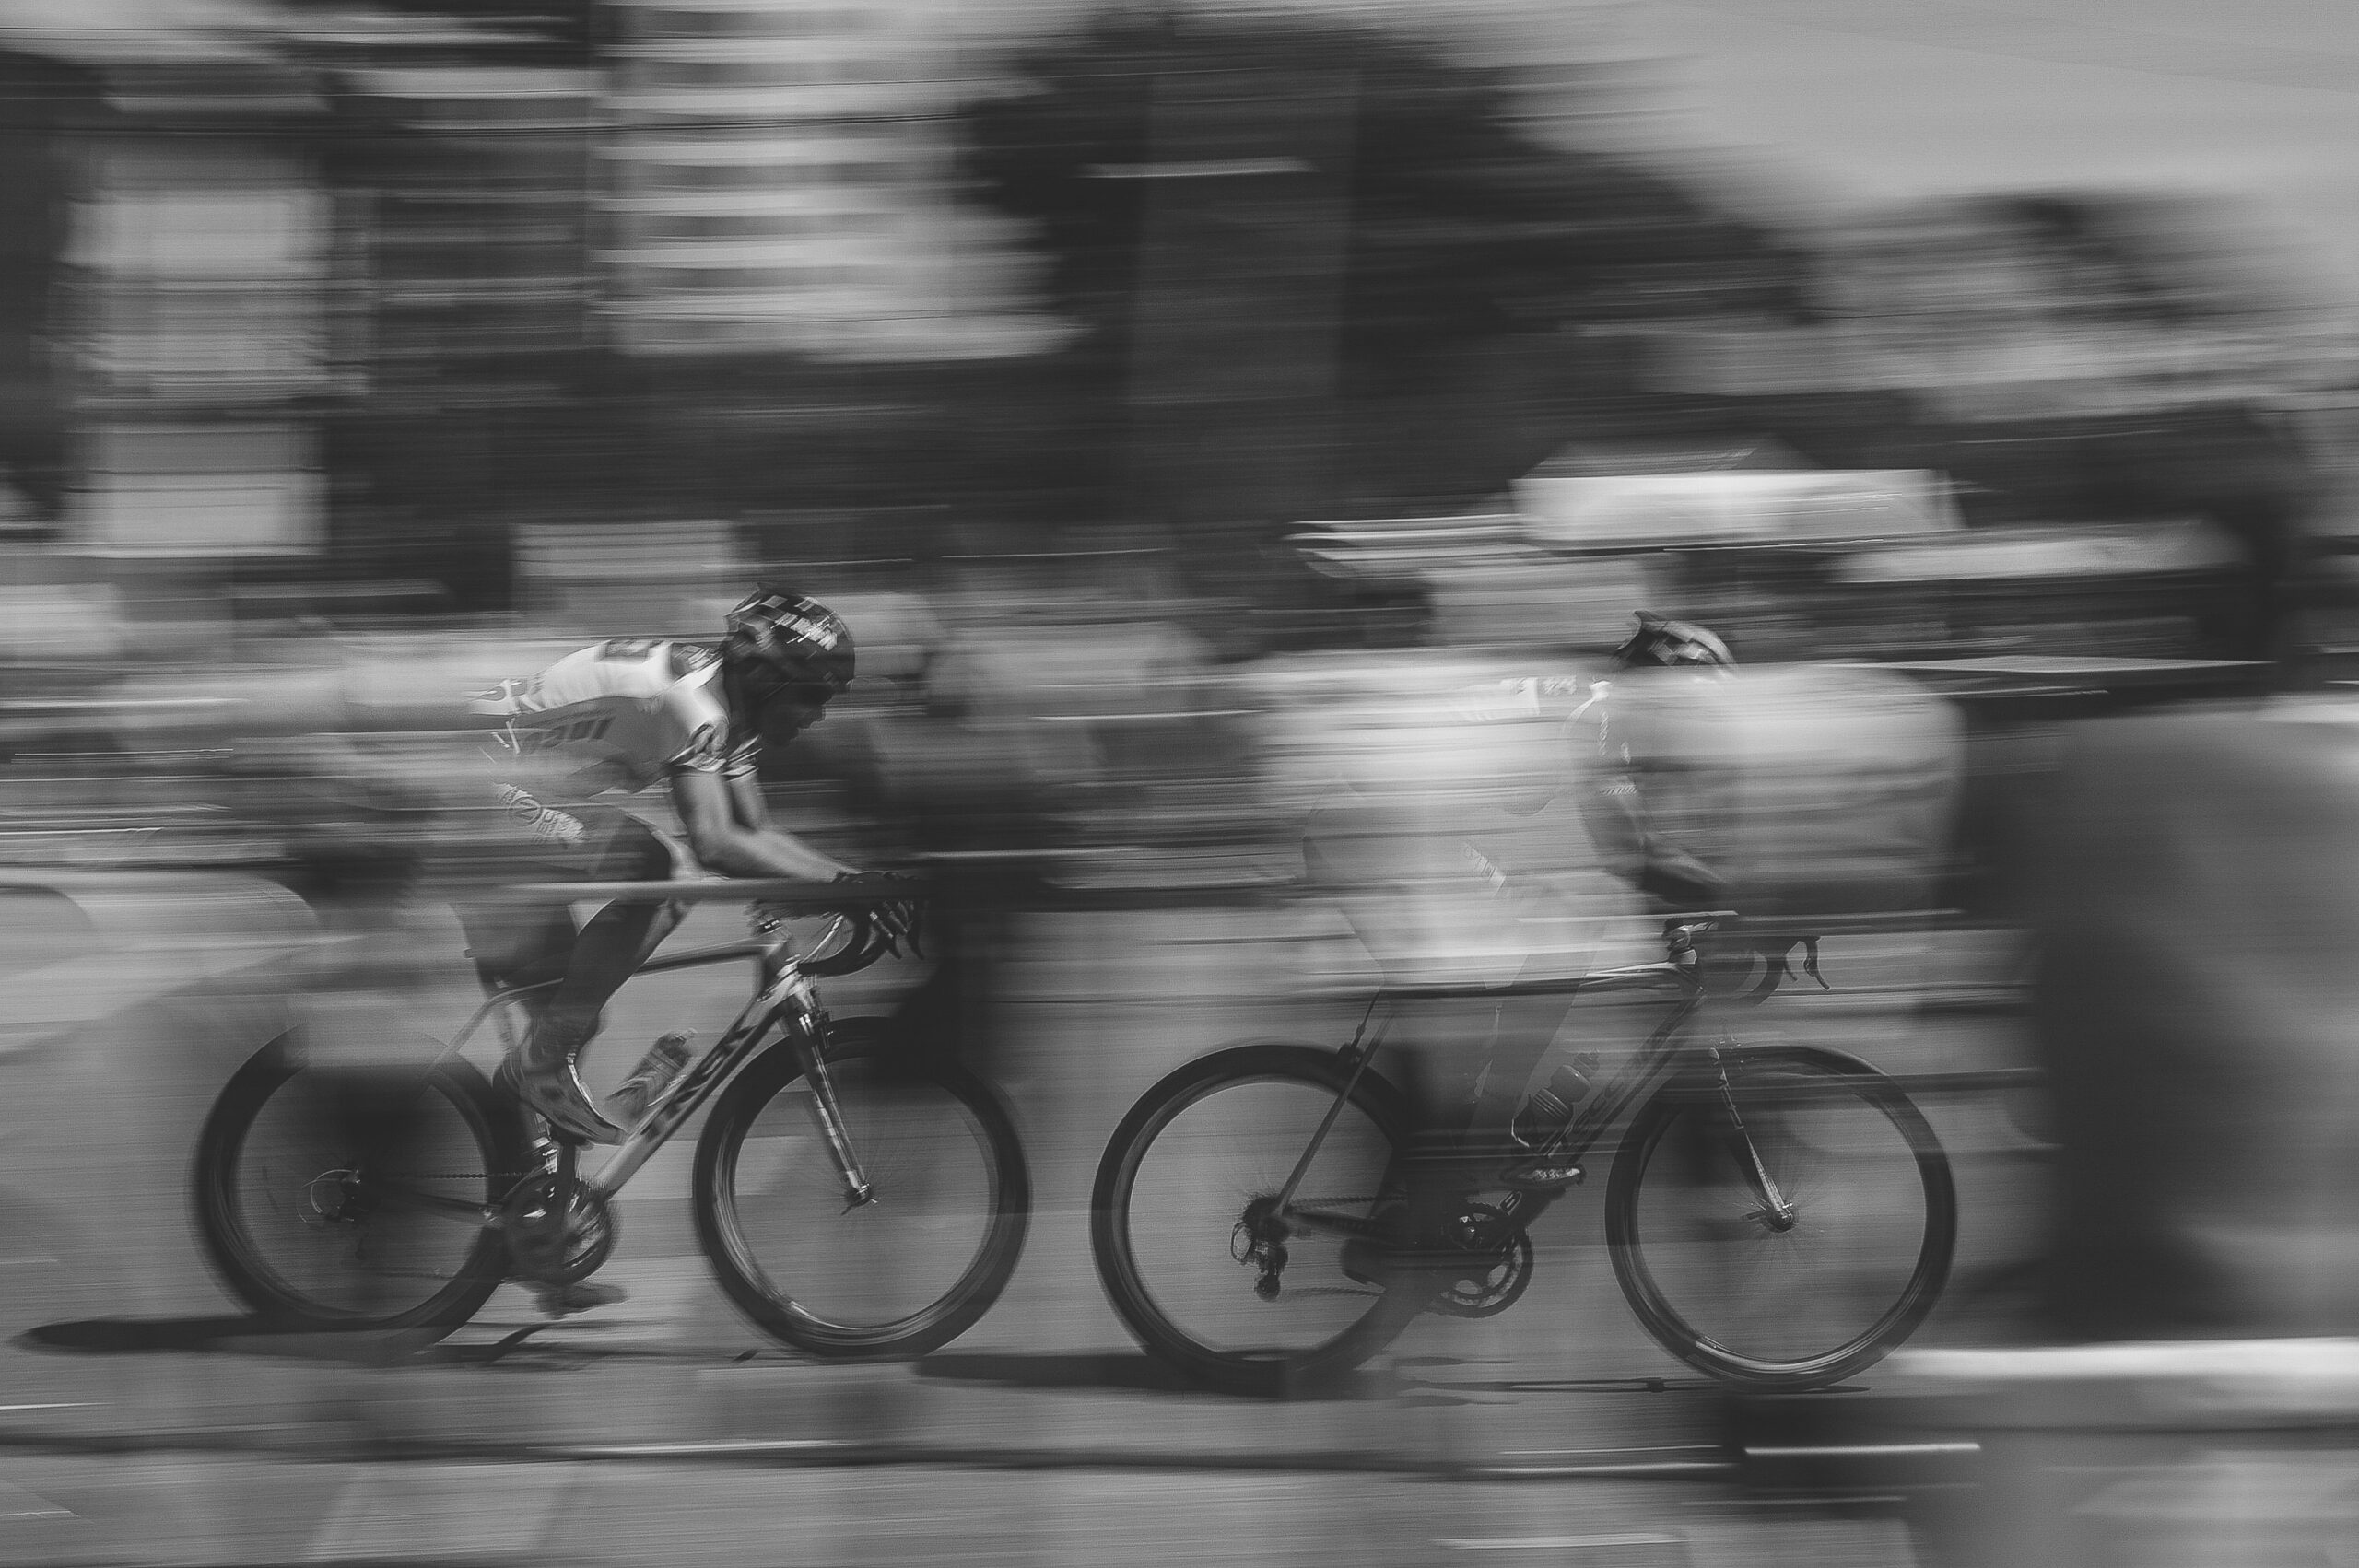 découvrez les dernières informations sur le tour de romandie, une course cycliste professionnelle en suisse. retrouvez les étapes, les coureurs et les résultats dans cet événement sportif majeur.